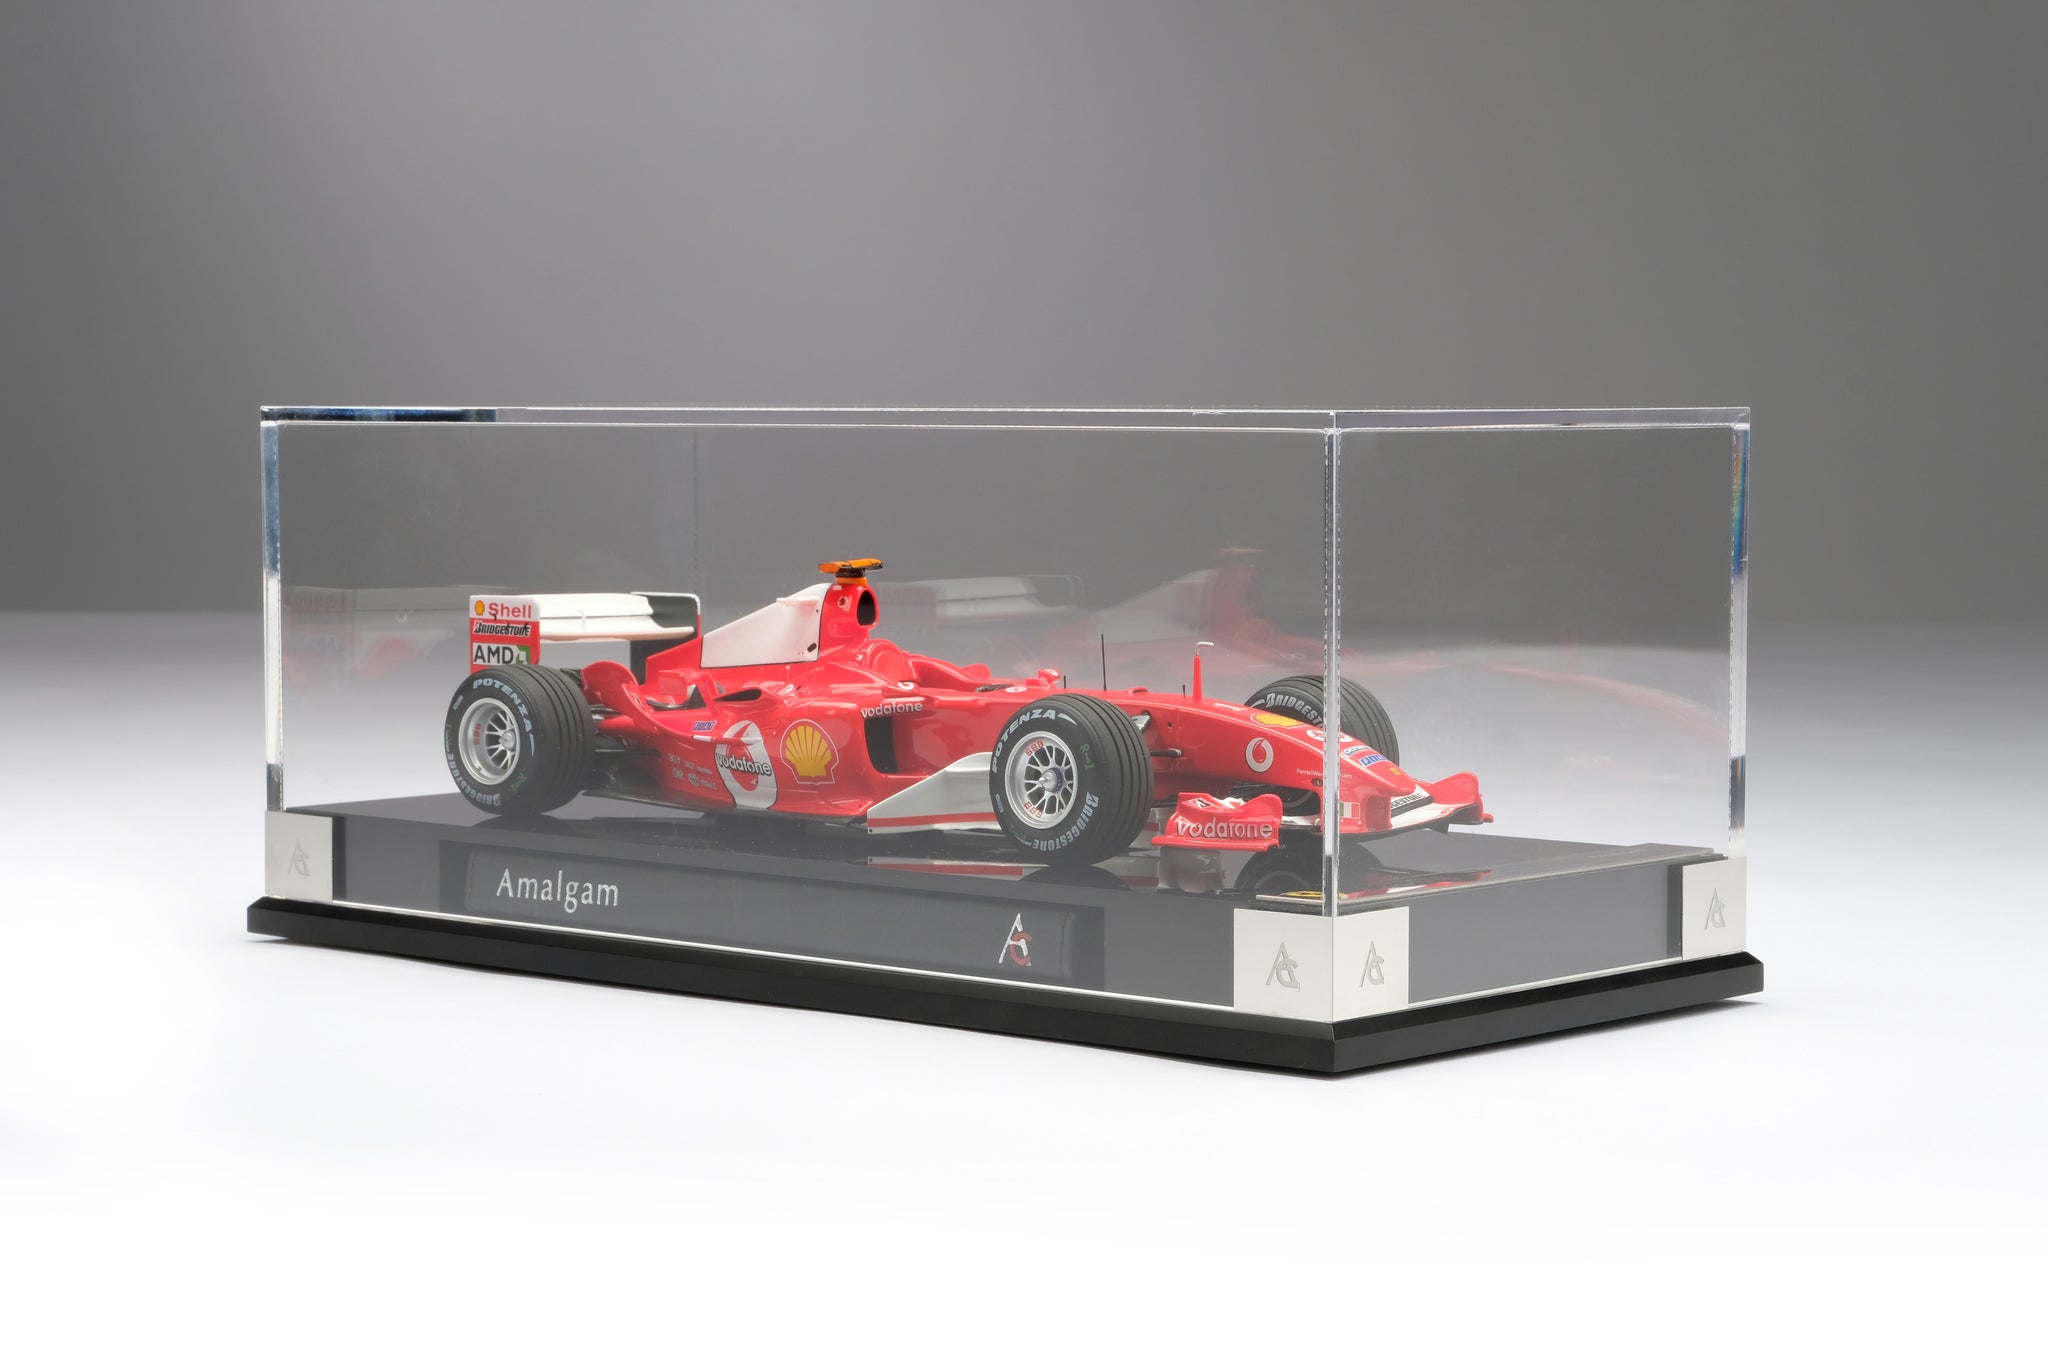 Ferrari F2004 at 1:18 scale